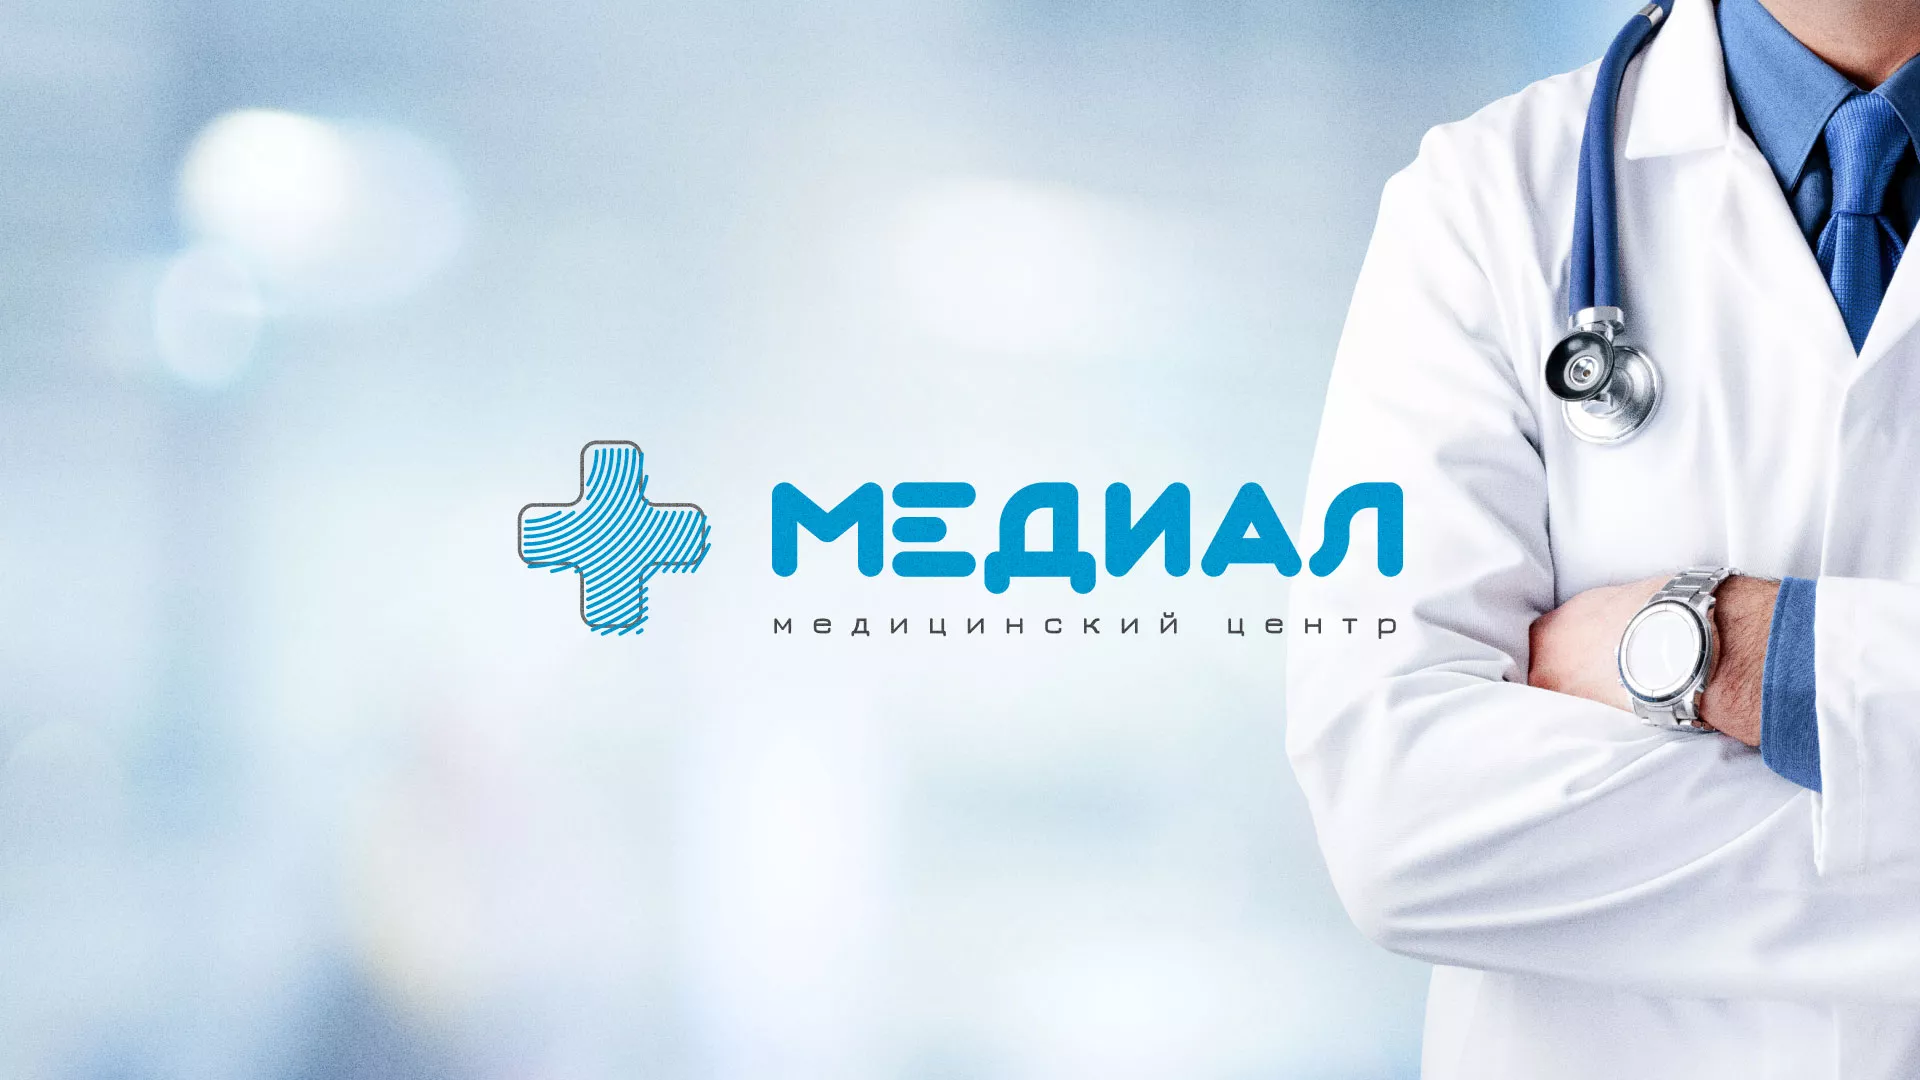 Создание сайта для медицинского центра «Медиал» в Жуковке